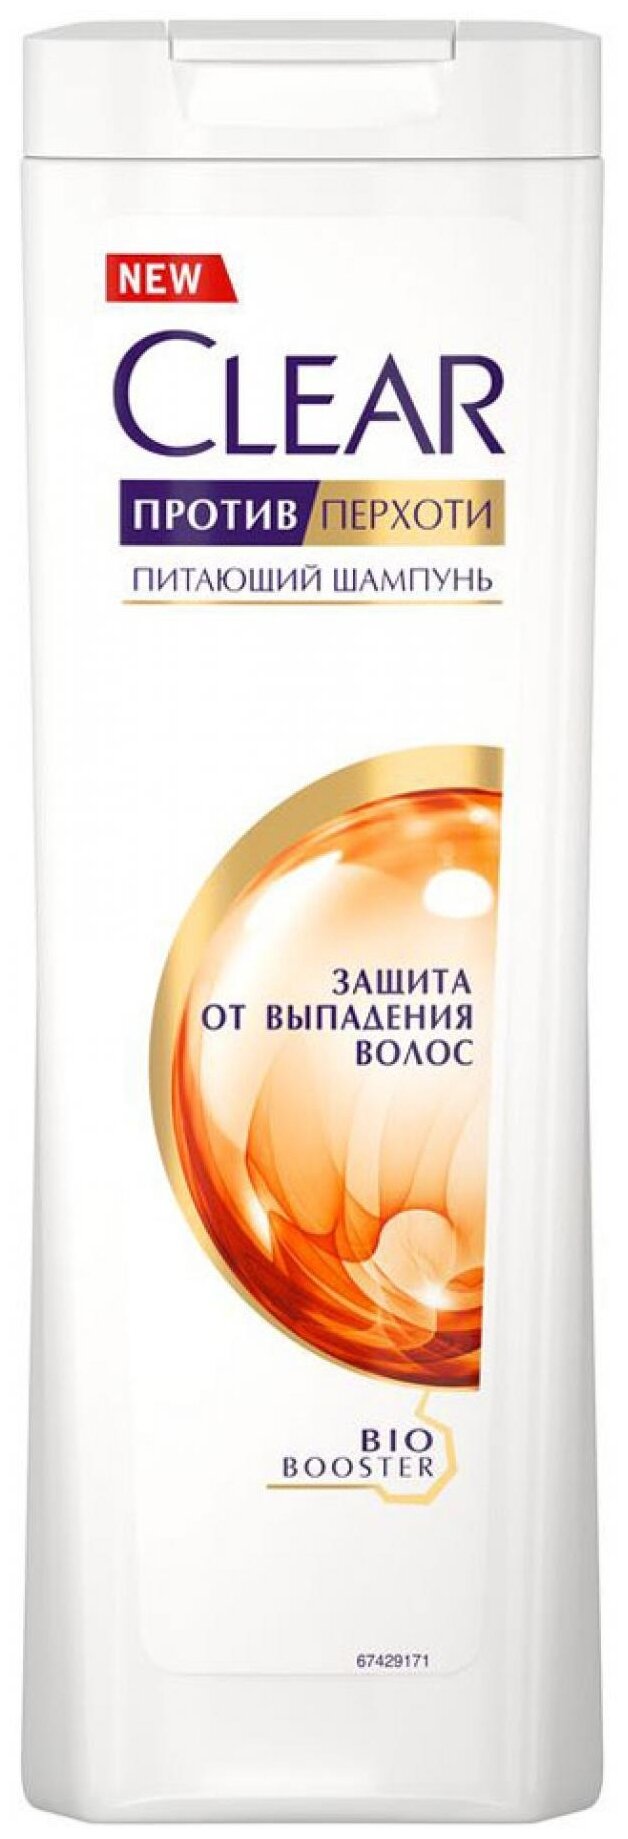 Clear шампунь против перхоти для женщин питающий Защита от выпадения волос, 200 мл — купить в интернет-магазине по низкой цене на Яндекс Маркете